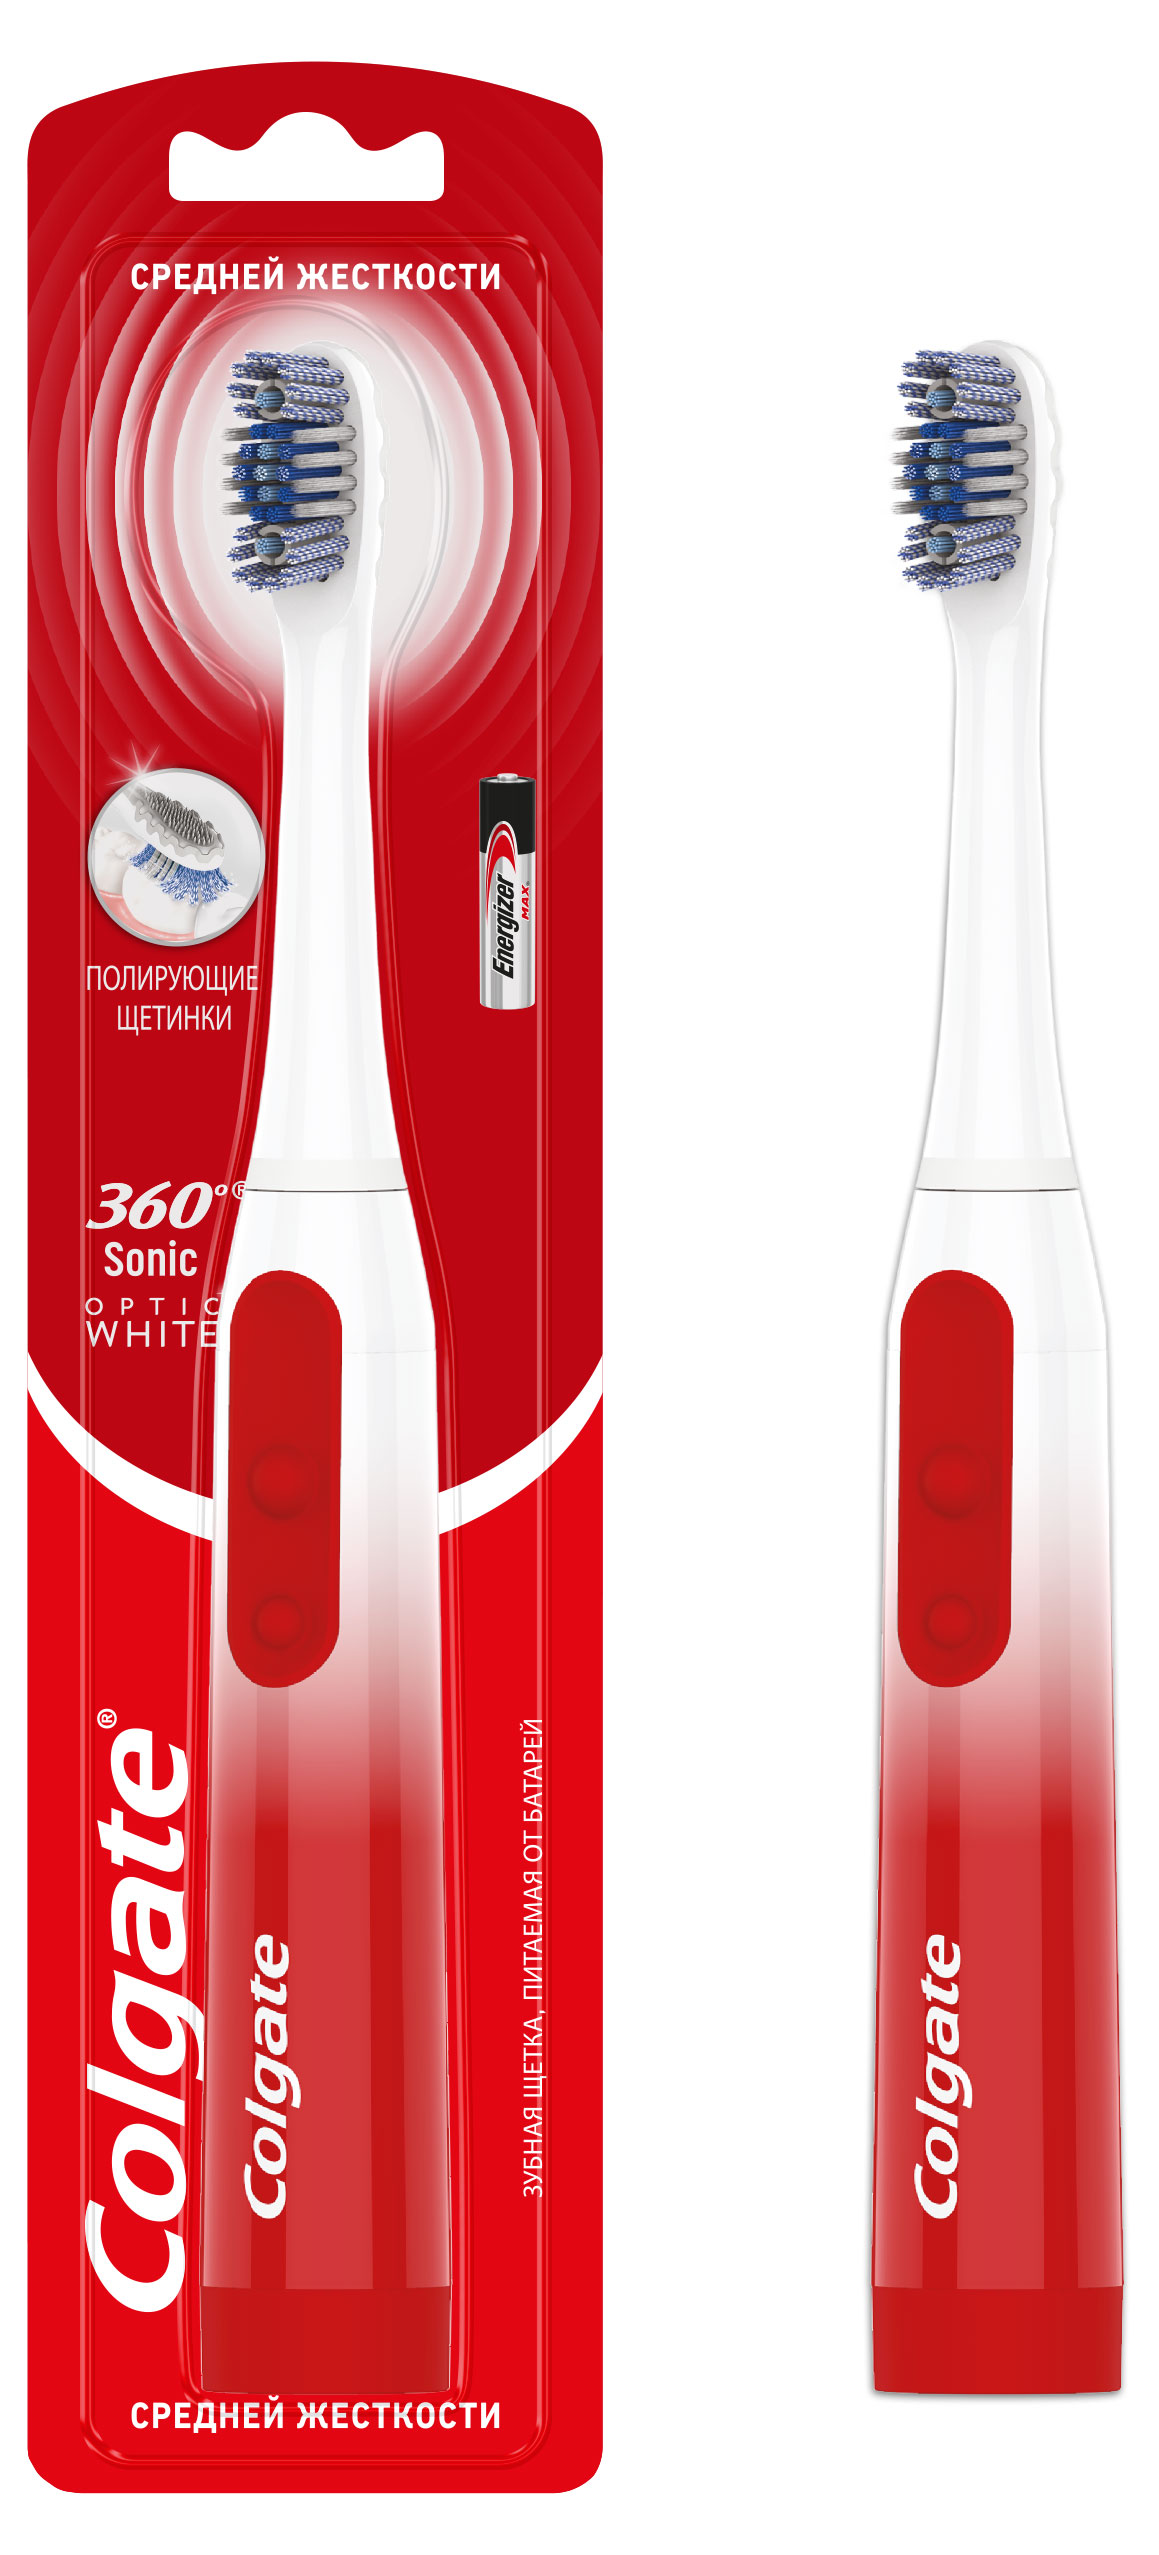 Зубная щетка Colgate 360 Sonic Optic White питаемая от батарей, средней жесткости